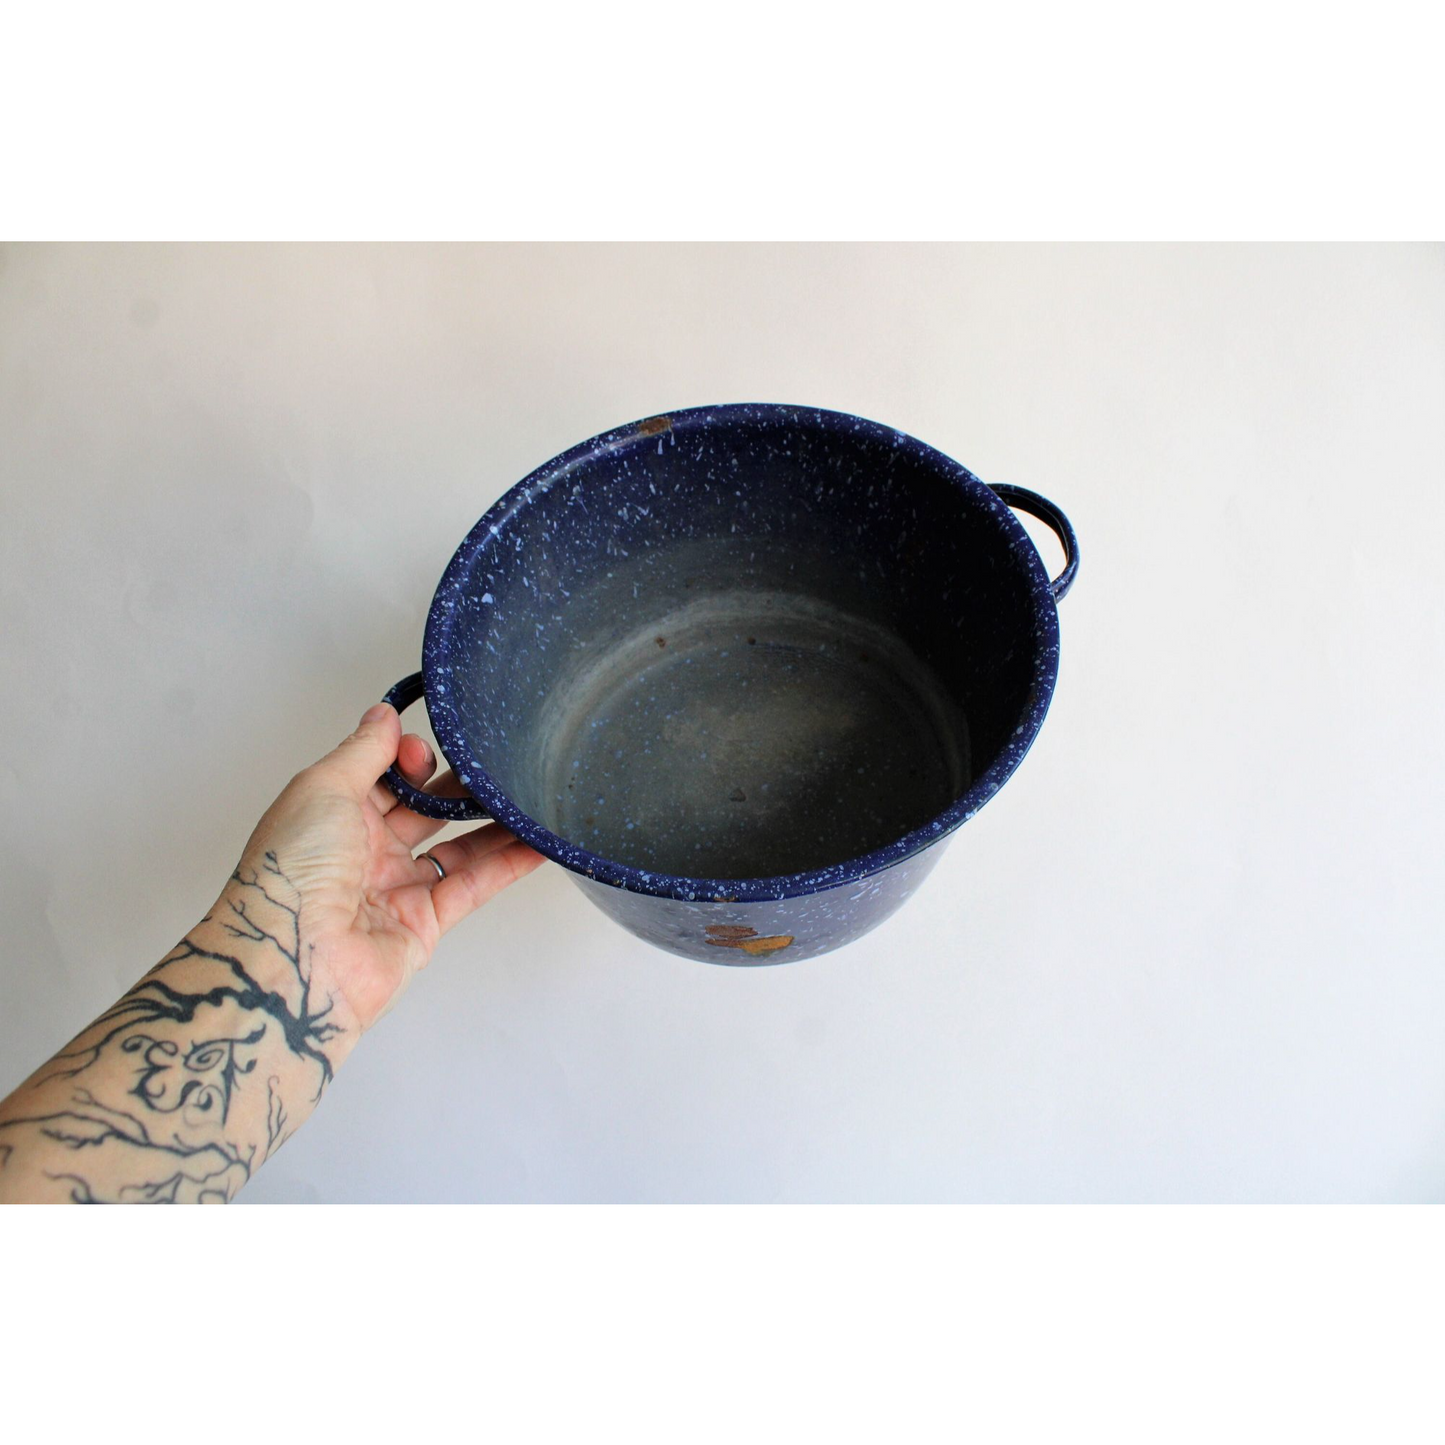 Vintage 1940s Rustic Graniteware Enamelware Cooking Pot